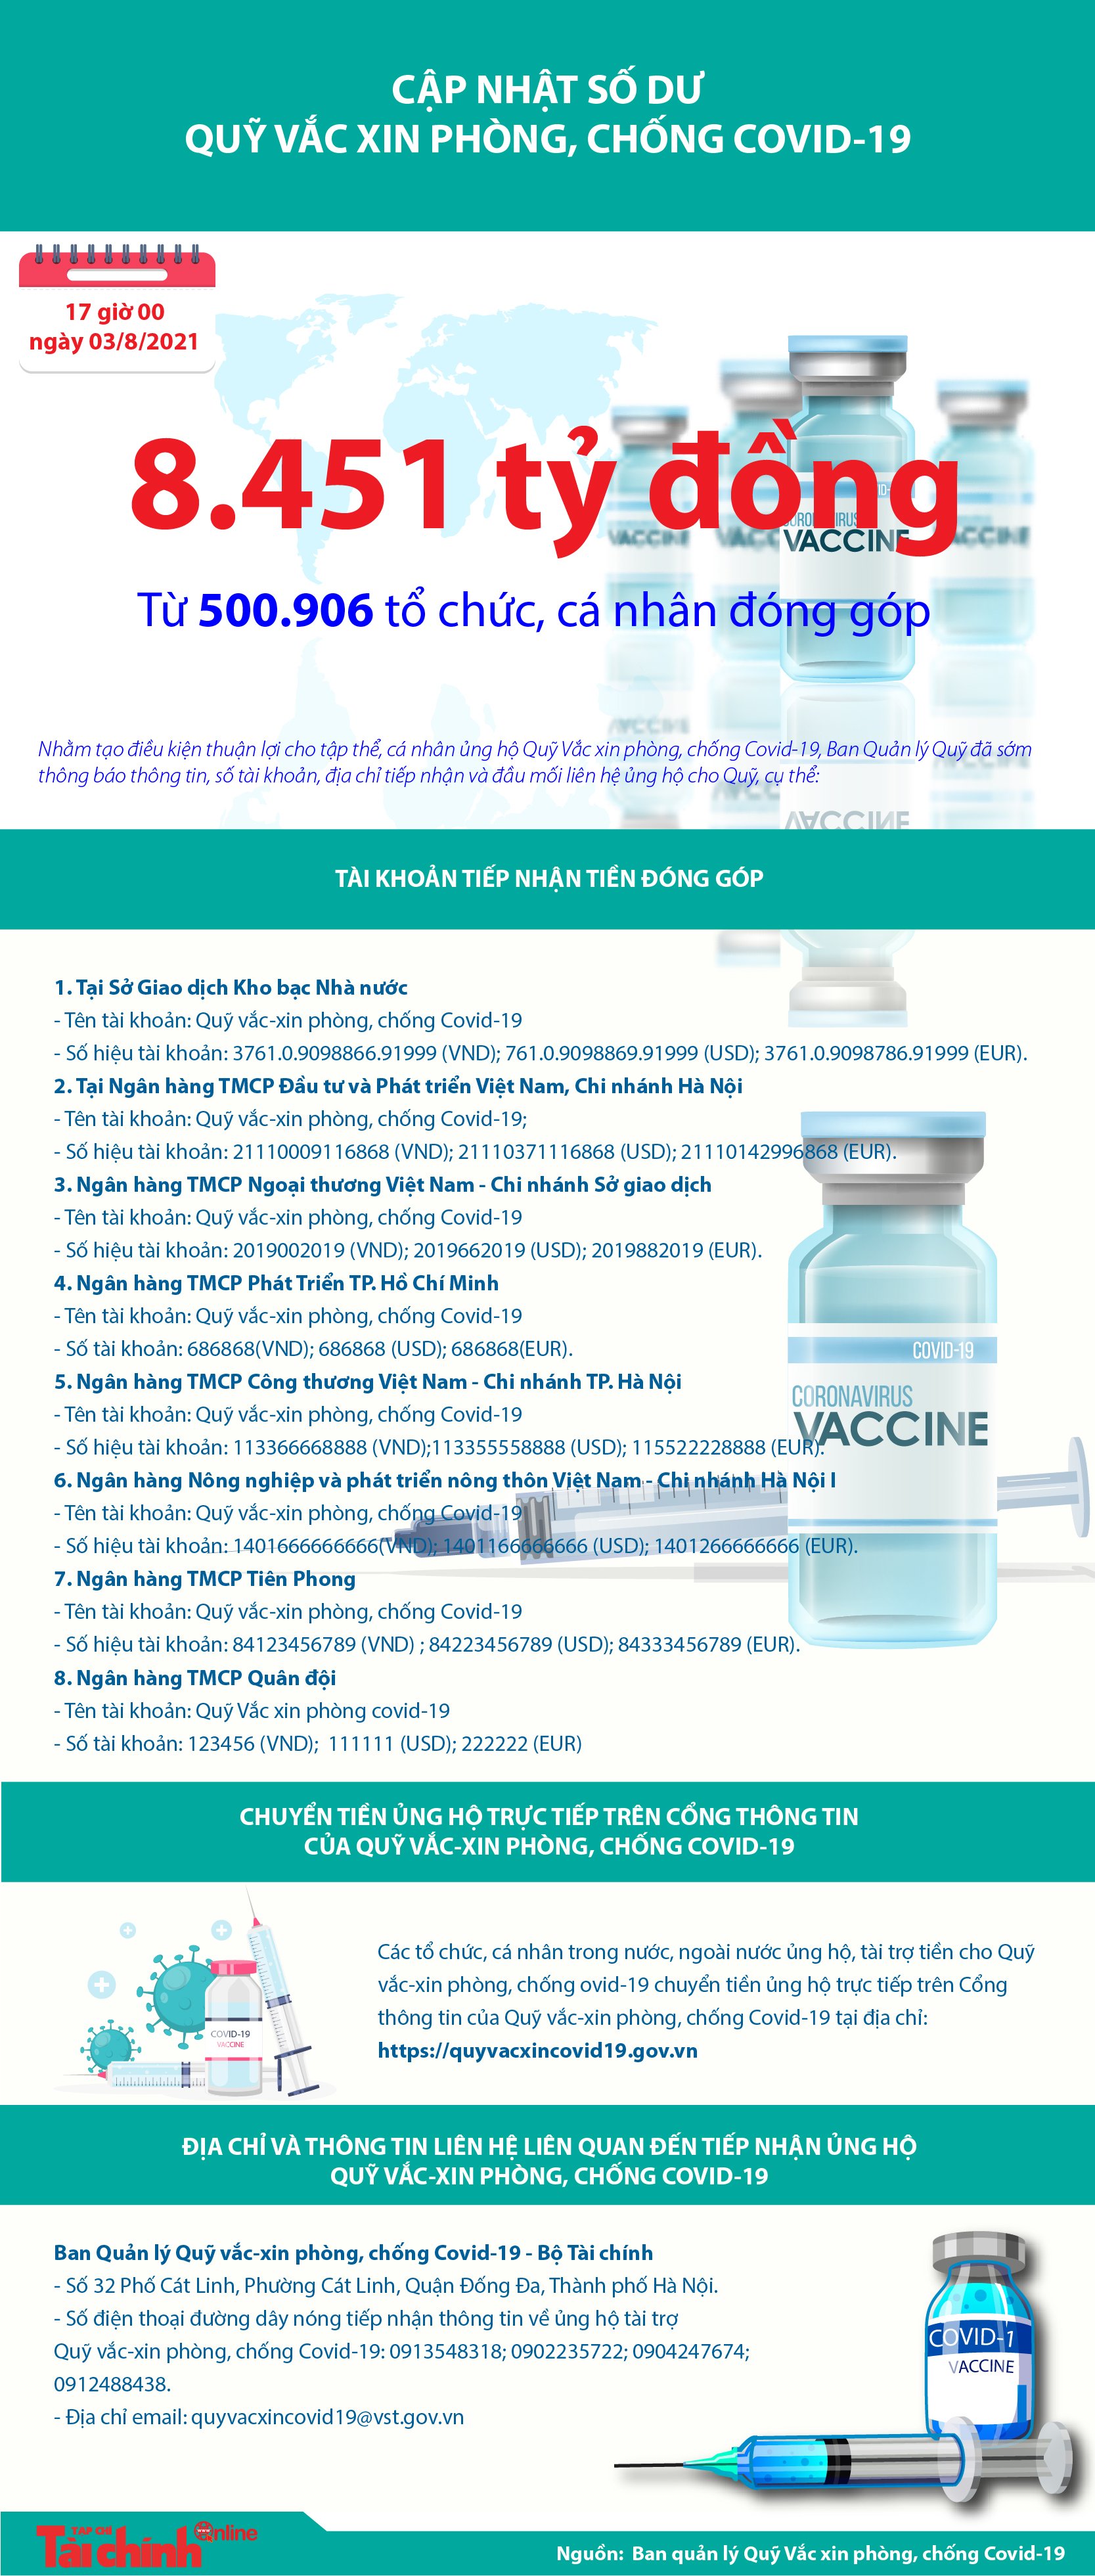 [Infographics] Quỹ Vắc xin phòng, chống COVID-19 đã tiếp nhận ủng hộ 8.451 tỷ đồng - Ảnh 1